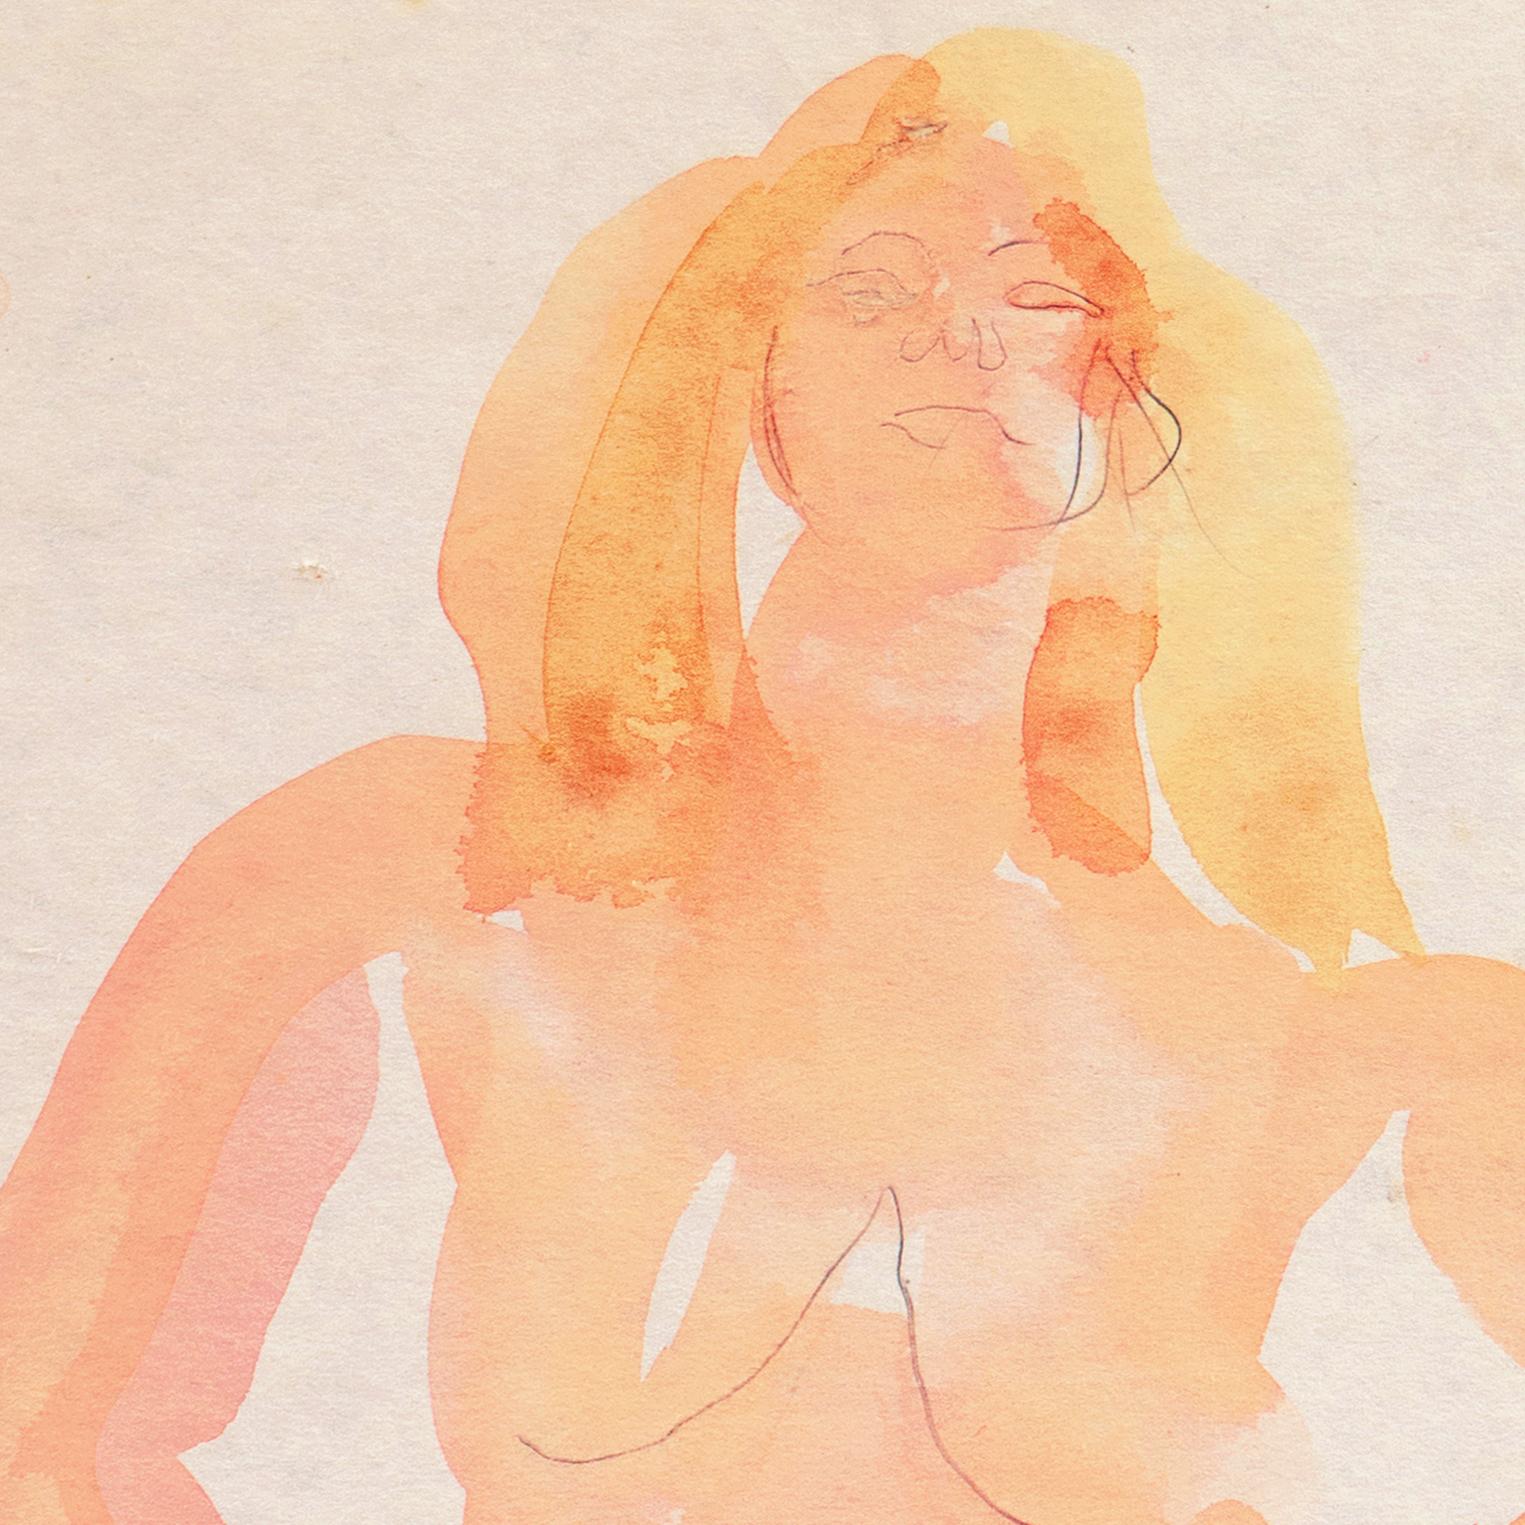 Gemalt um 1955 und begleitet von einem Echtheitszertifikat und einem Nachlasssiegel für Victor Di Gesu (Amerikaner, 1914-1988) und gemalt um 1955. 

Ein dramatisches, postimpressionistisches, figurales Aquarell einer jungen Frau,  nackt, mit